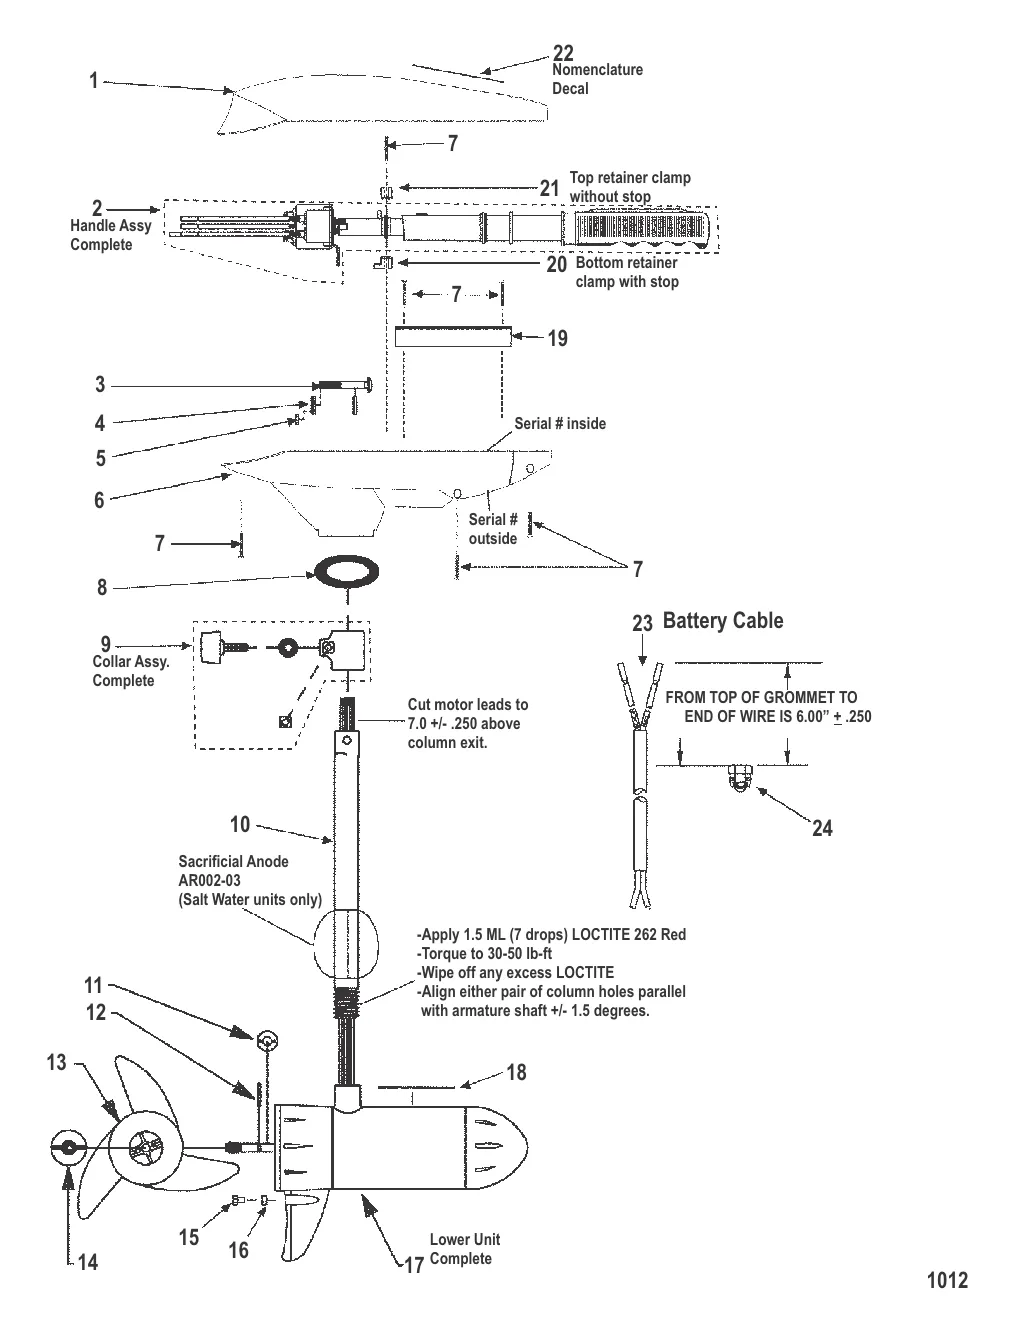 Двигатель для тралового лова в сборе (Модель ET45 / EHB45) (12 В)